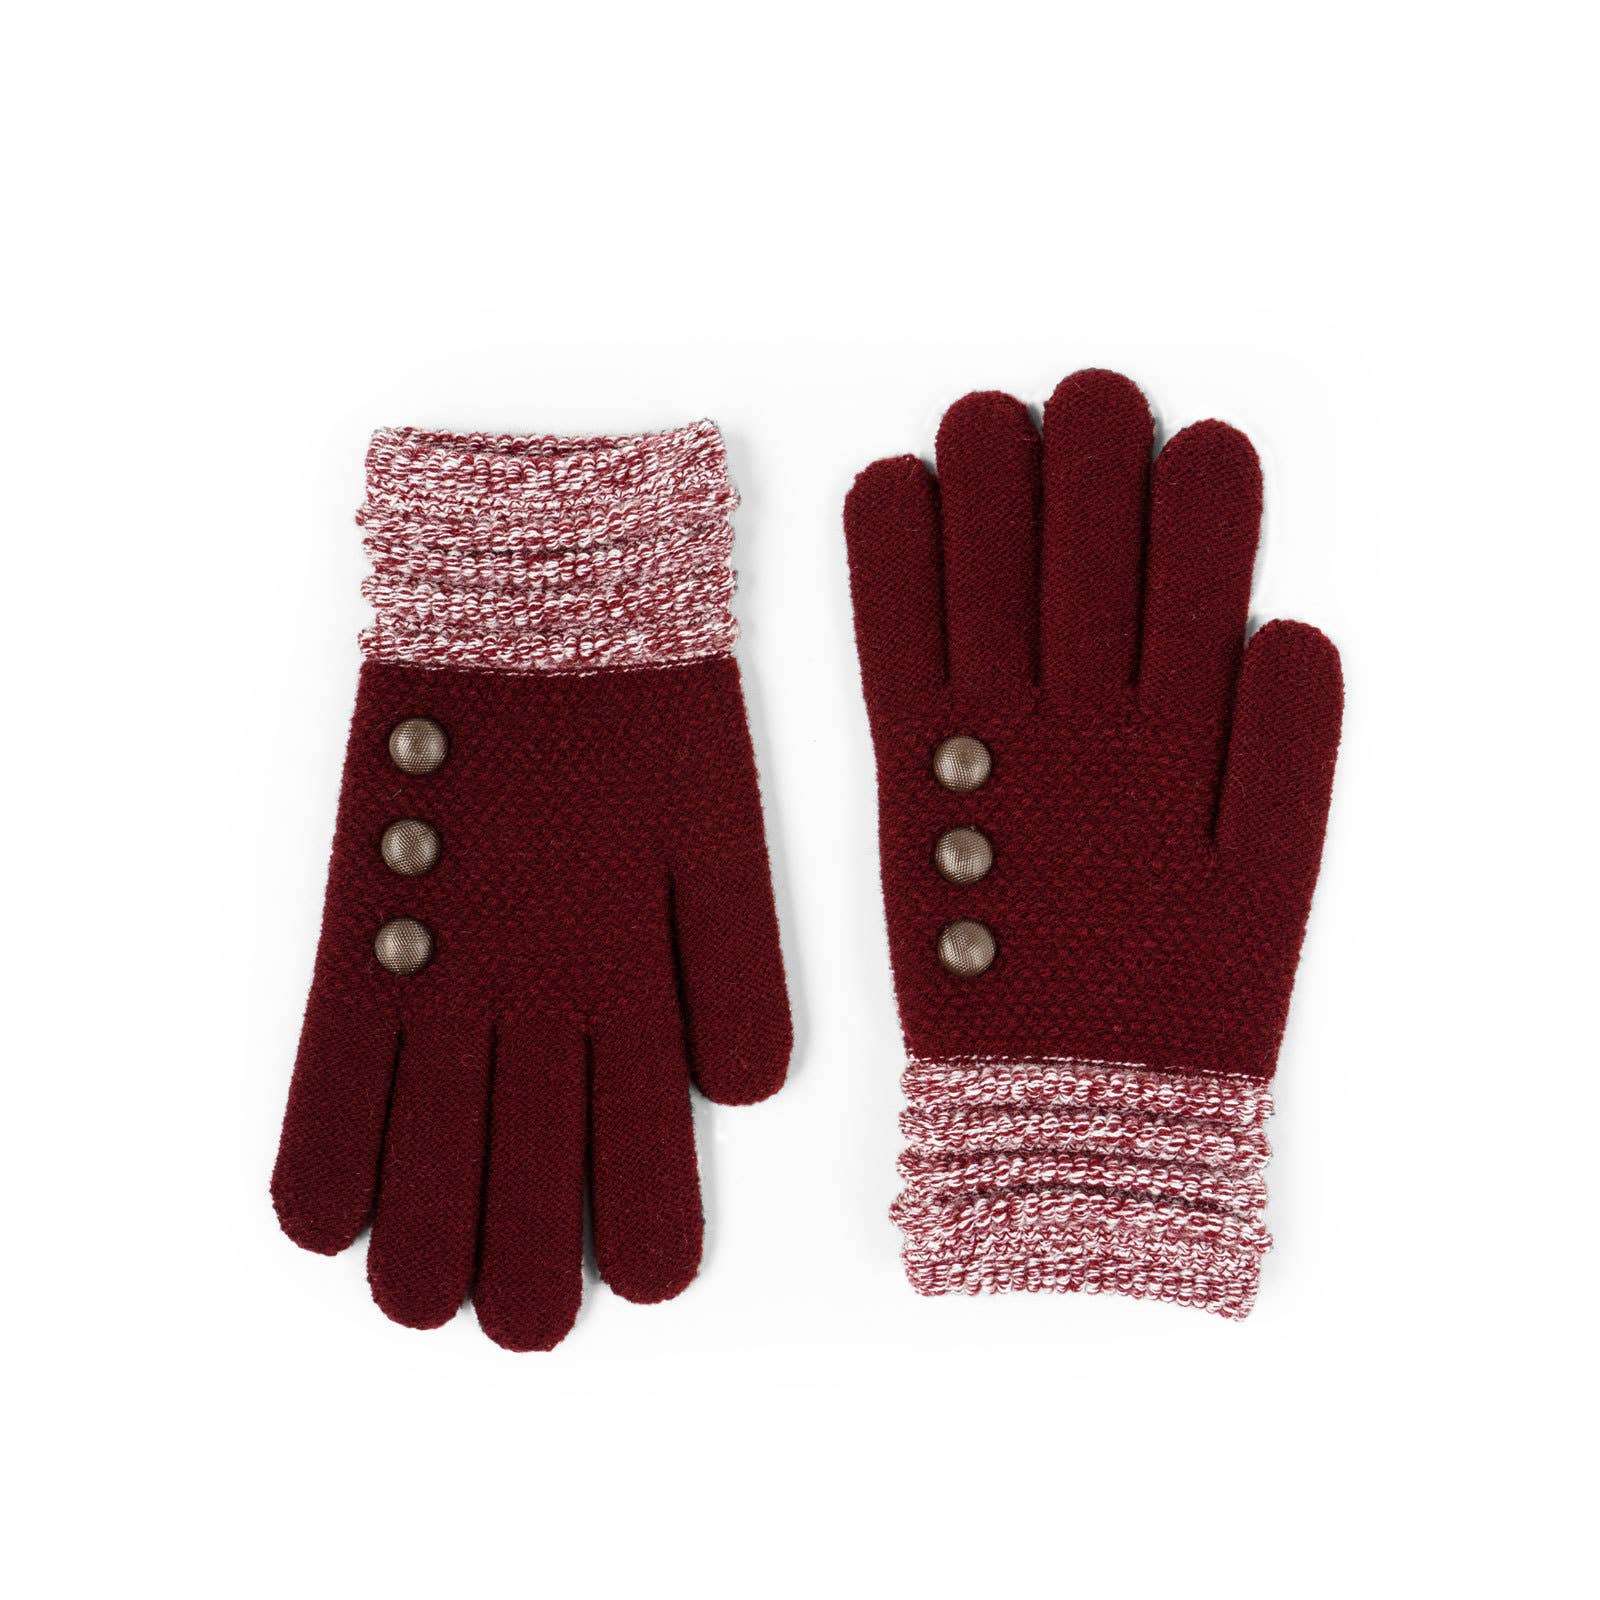 Britt's Knits Originals Gloves Assortment